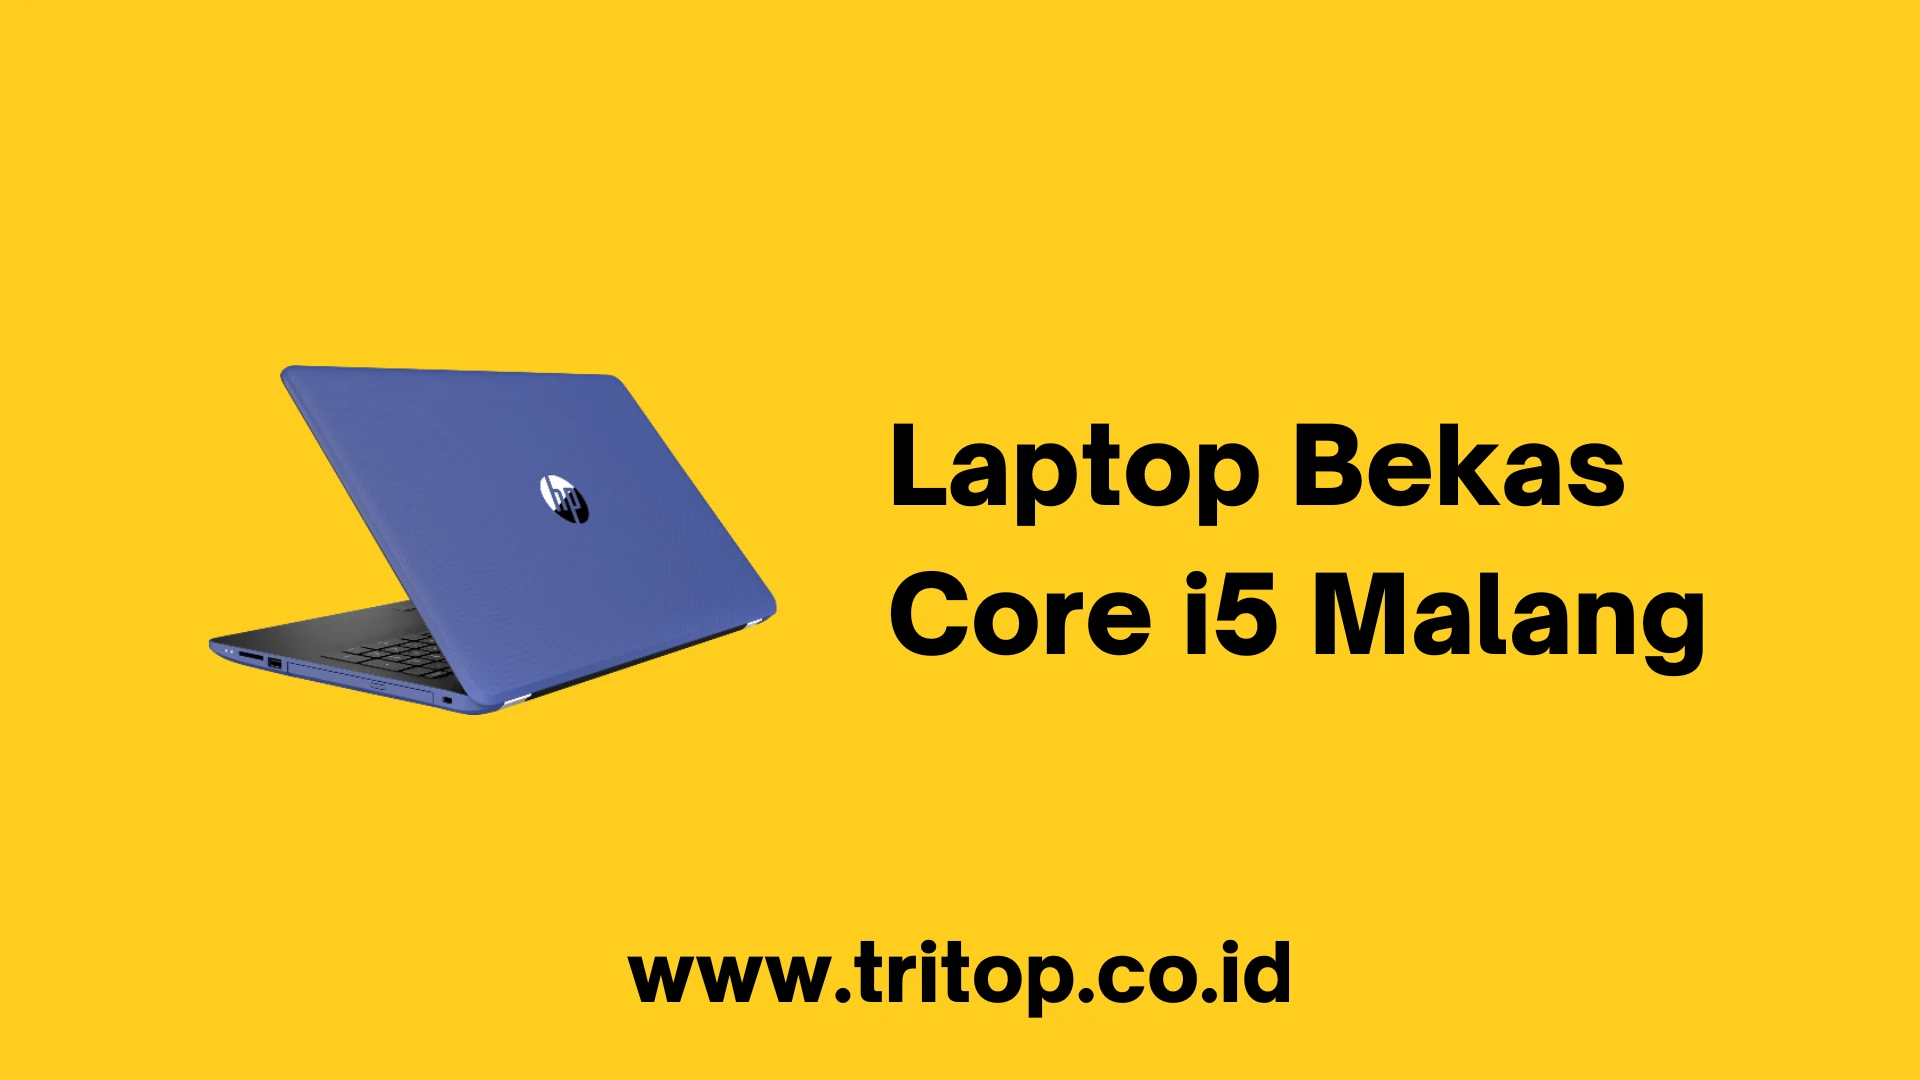 Laptop Bekas Core i5 Malang